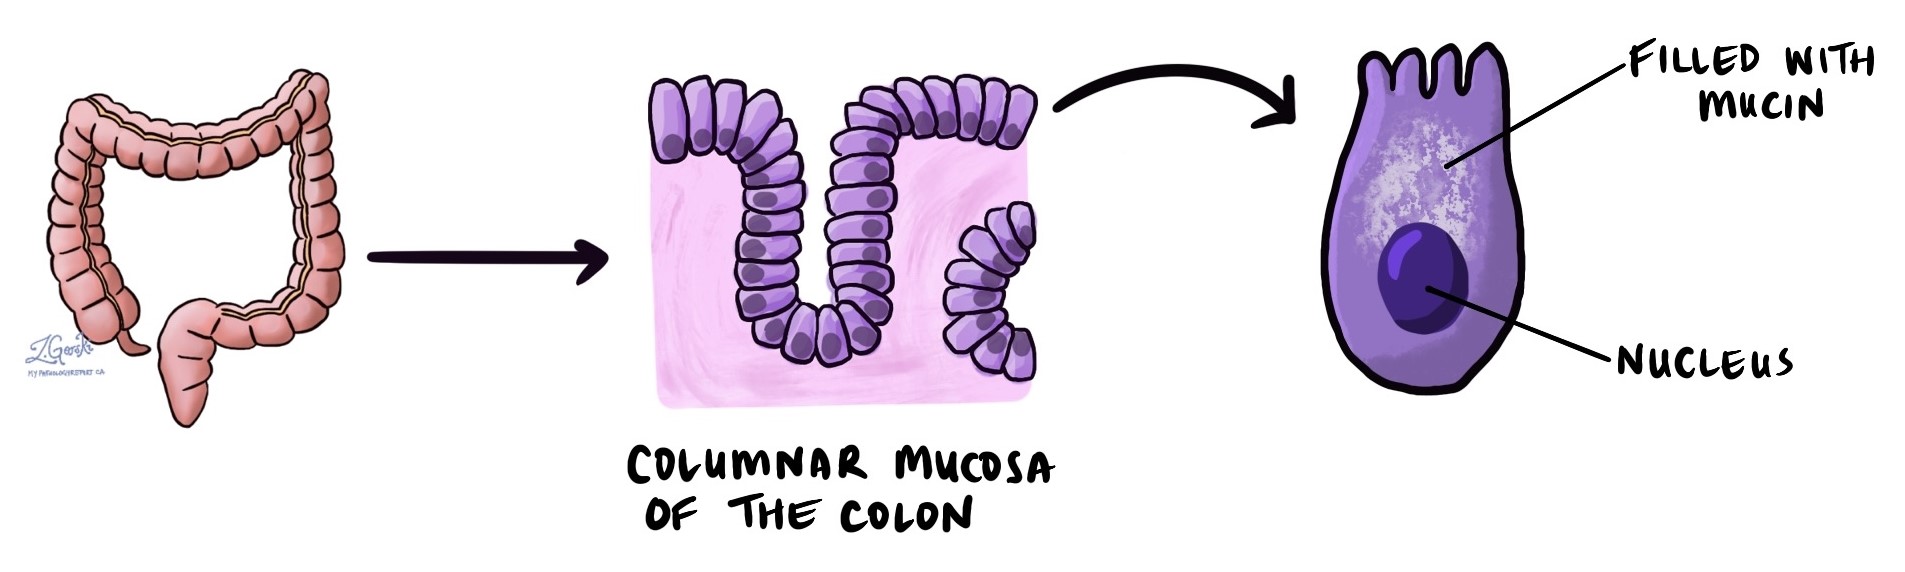 Mucosa colonnare